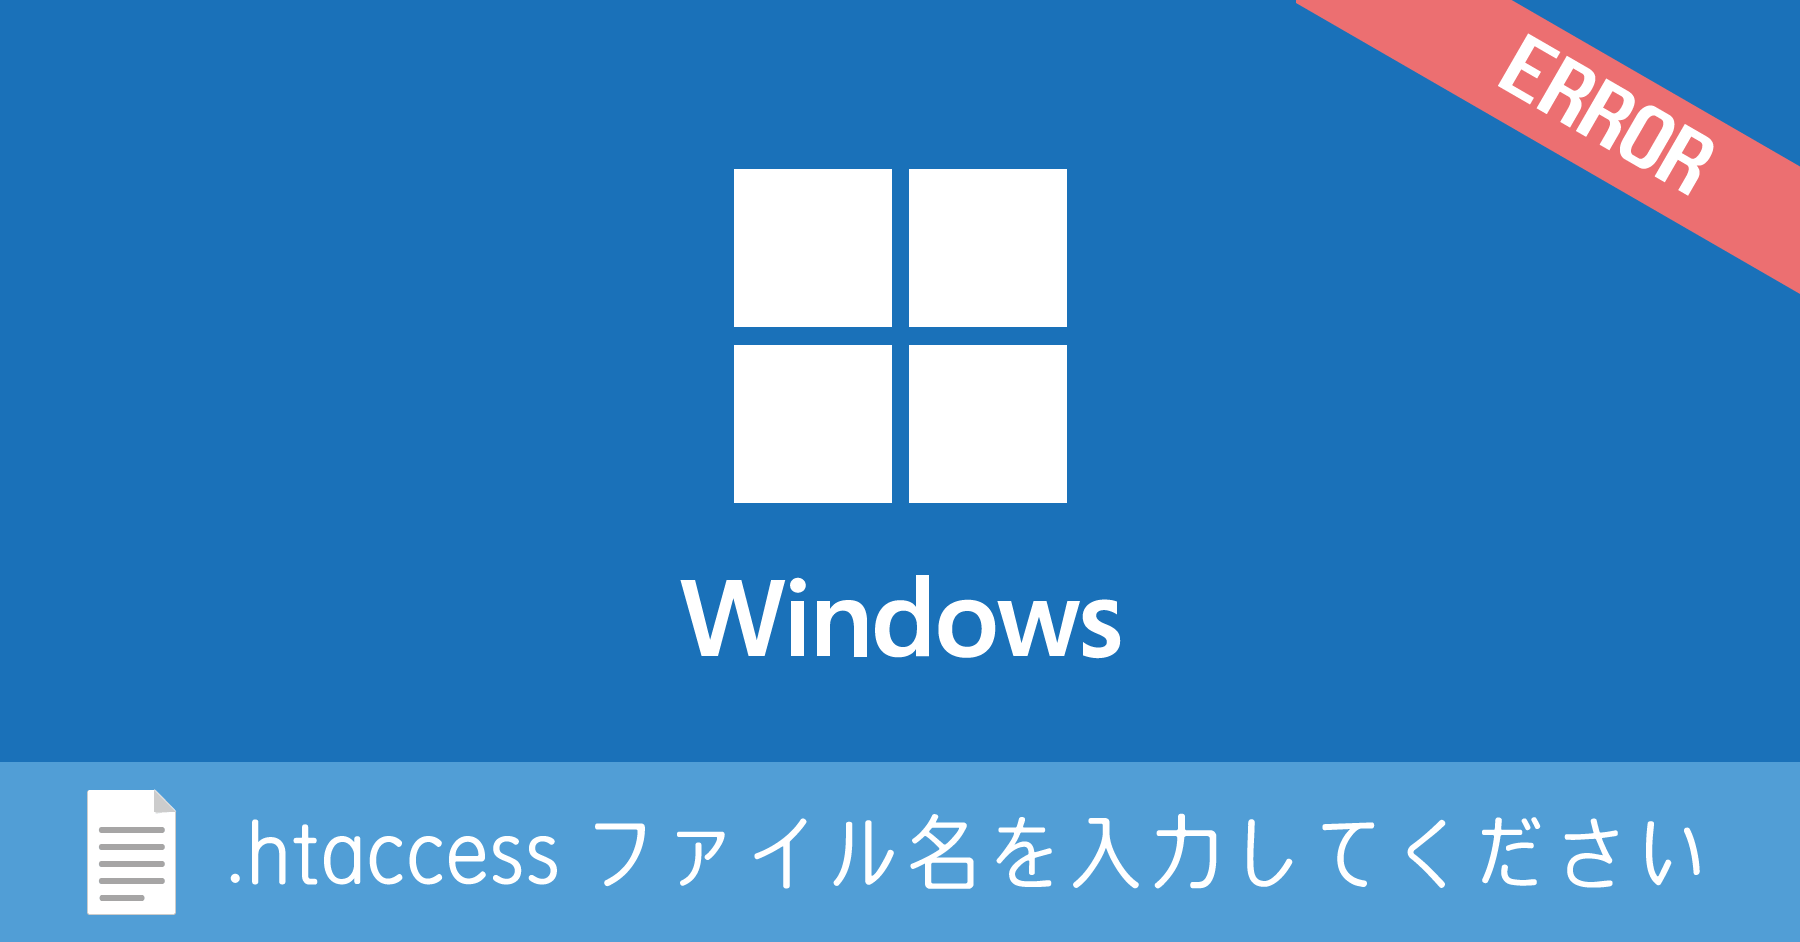 Windows で .htaccess を作成すると「ファイル名を入力してください」とエラーになる場合の対処法